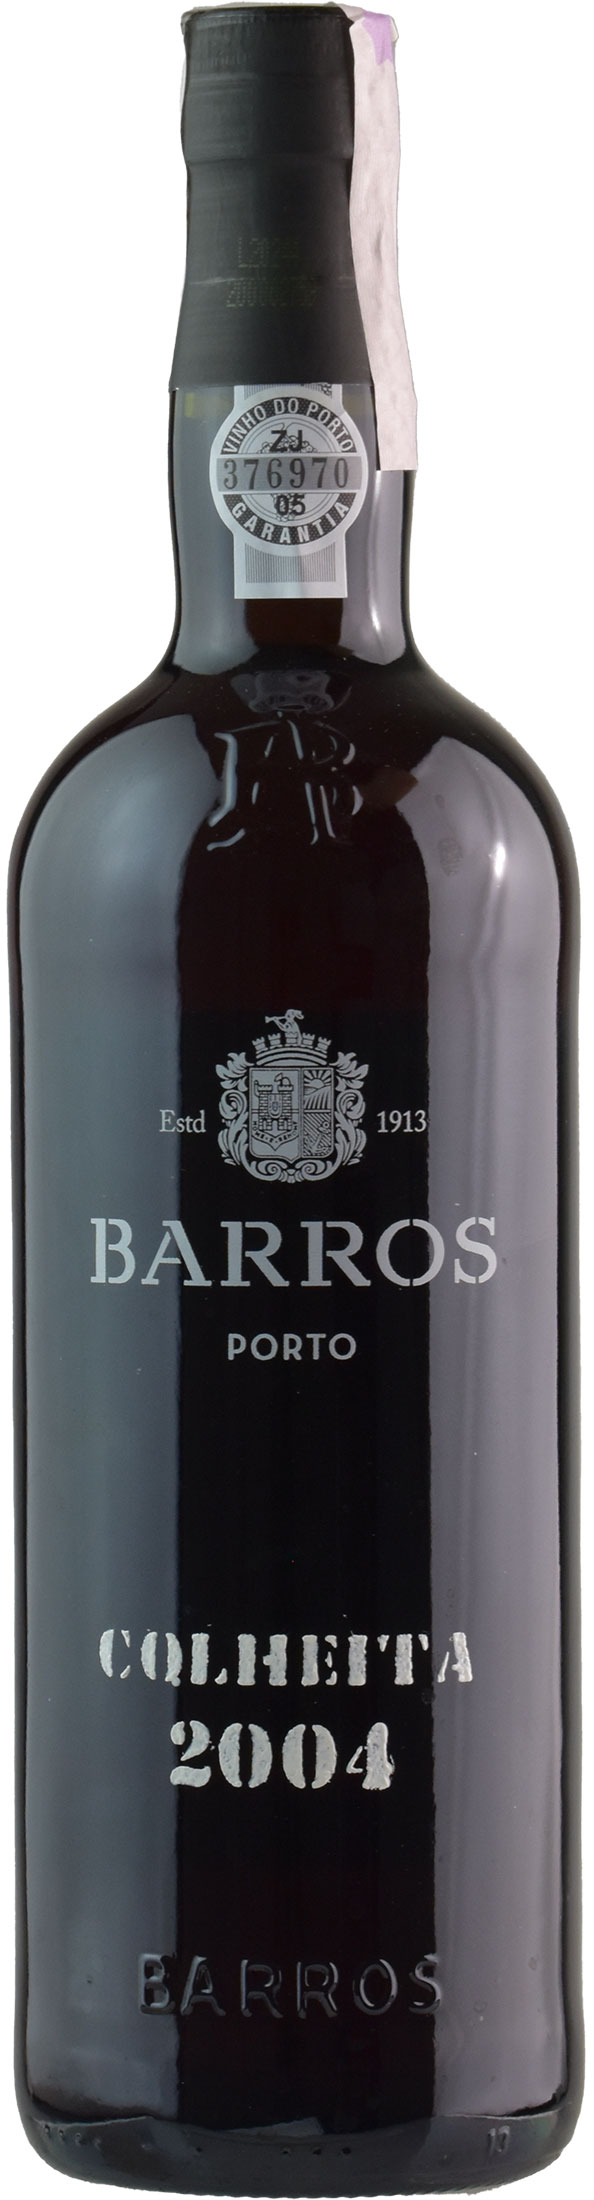 Barros Porto Colheita 2004